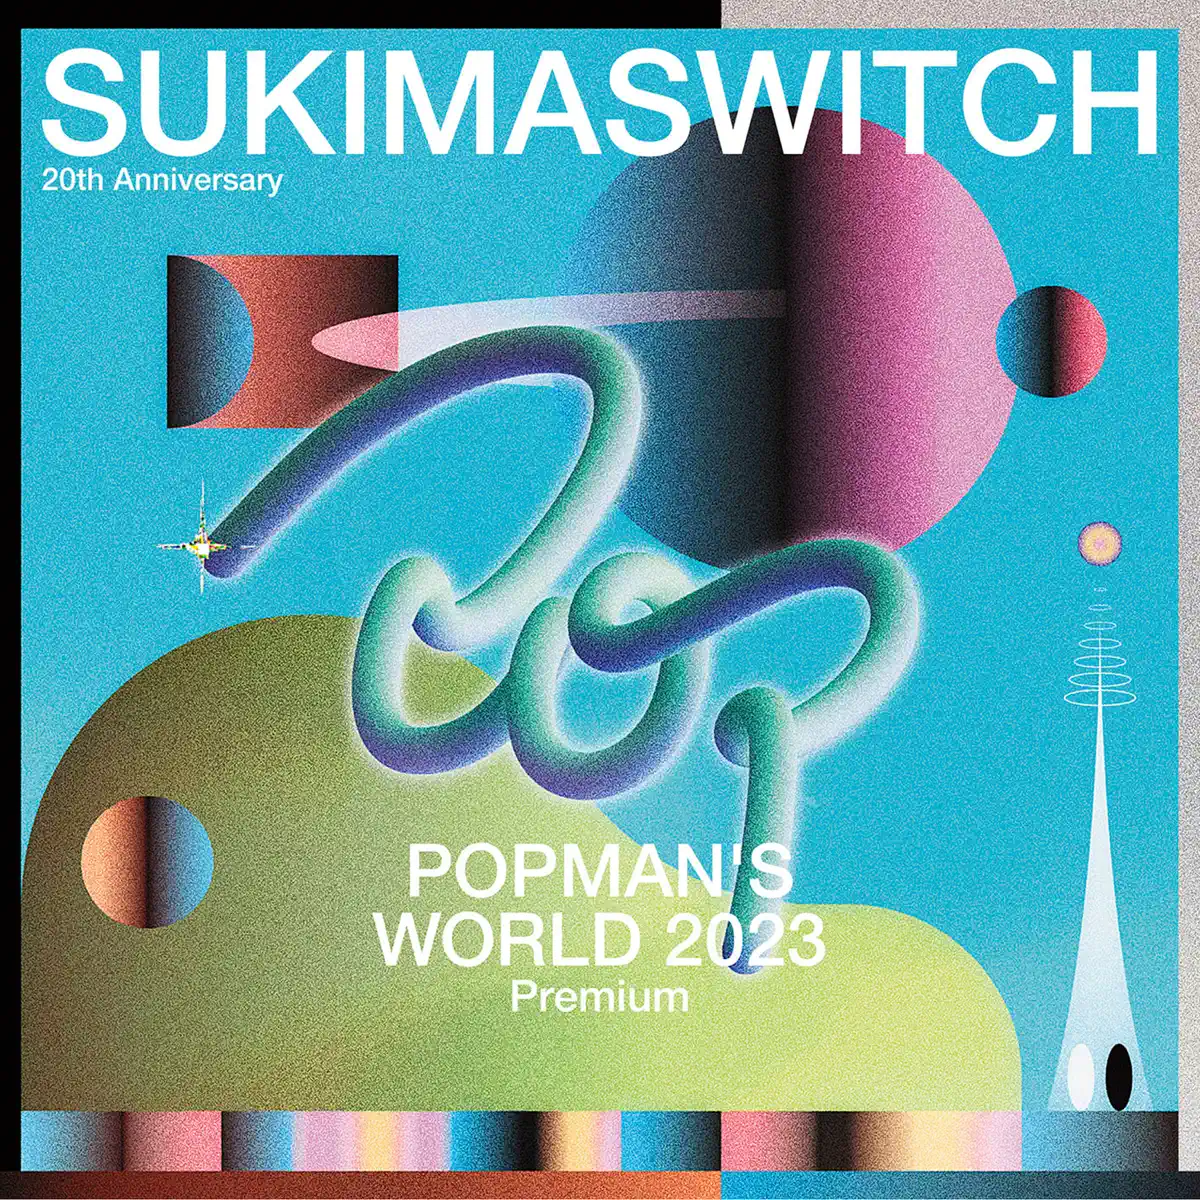 無限開關 スキマスイッチ - SUKIMASWITCH 20th Anniversary "POPMAN’S WORLD 2023 Premium" (Live) (2024) [iTunes Plus AAC M4A]-新房子